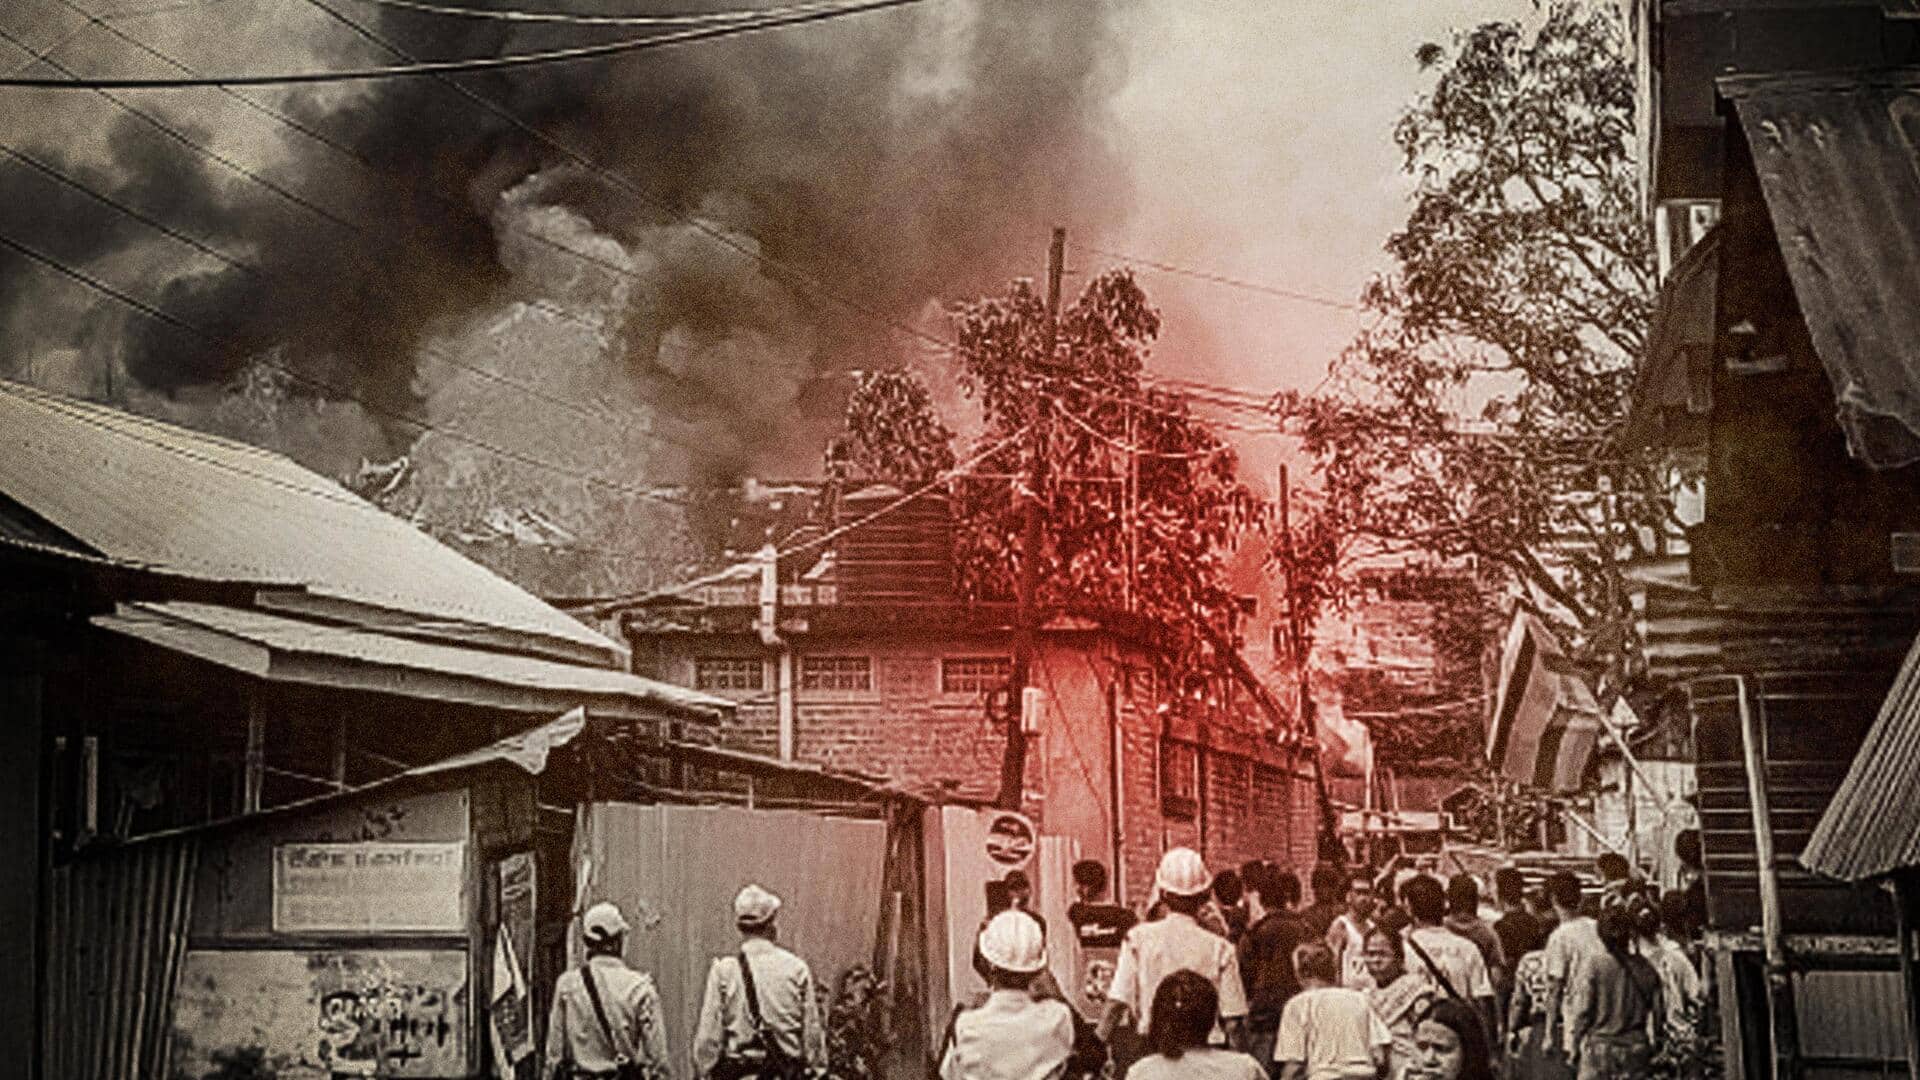 मणिपुर में फिर हिंसा; उपद्रवियों ने खाली घरों में लगाई आग, सुरक्षाबलों की बसें भी जलाईं